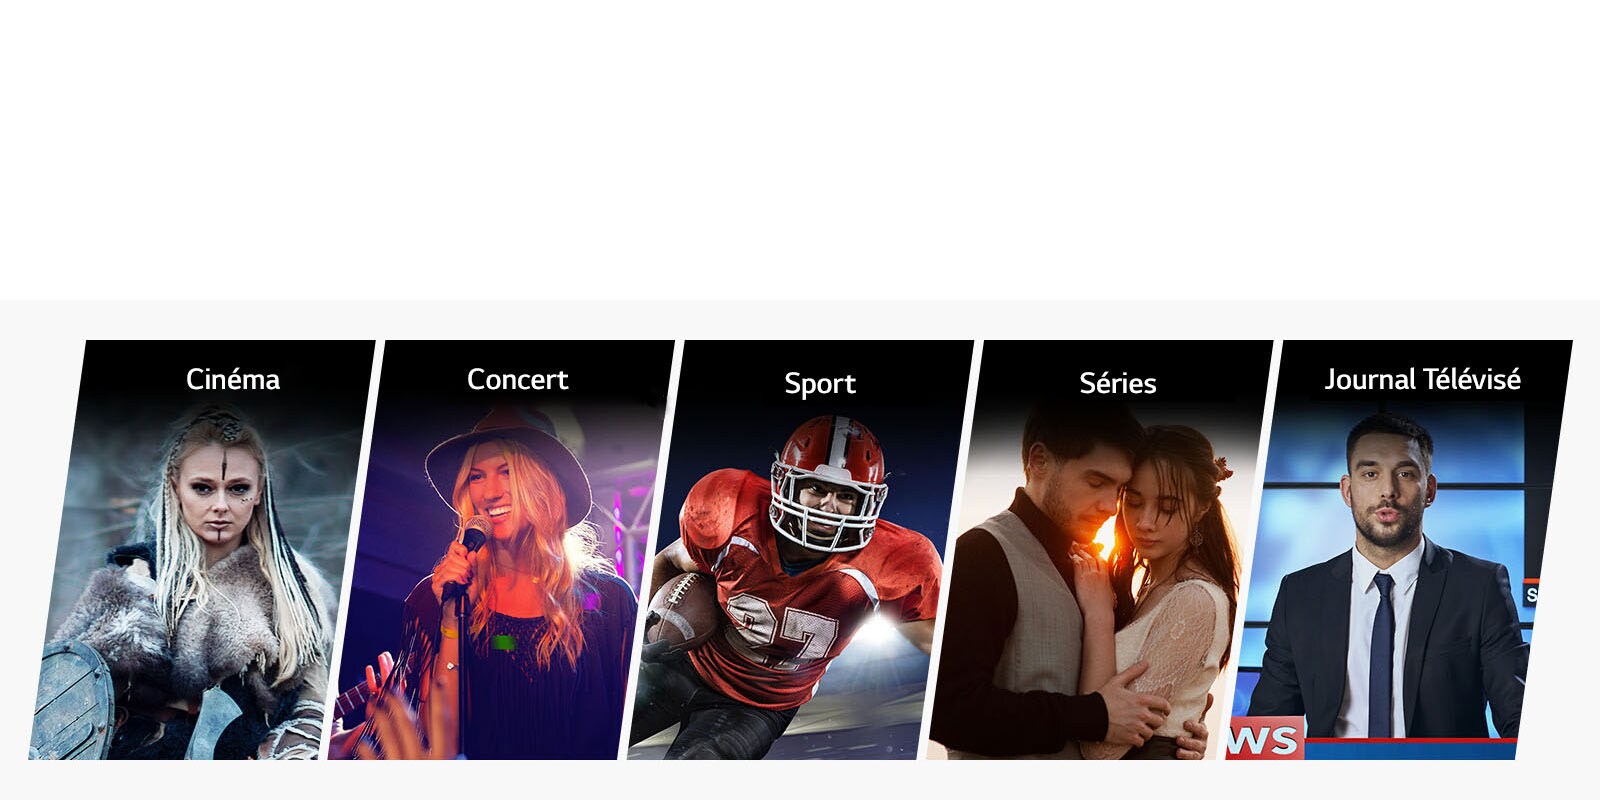 Cinq cadres verticaux illustrent les catégories Cinéma, Musique, Sport, Séries et Journal Télévisé